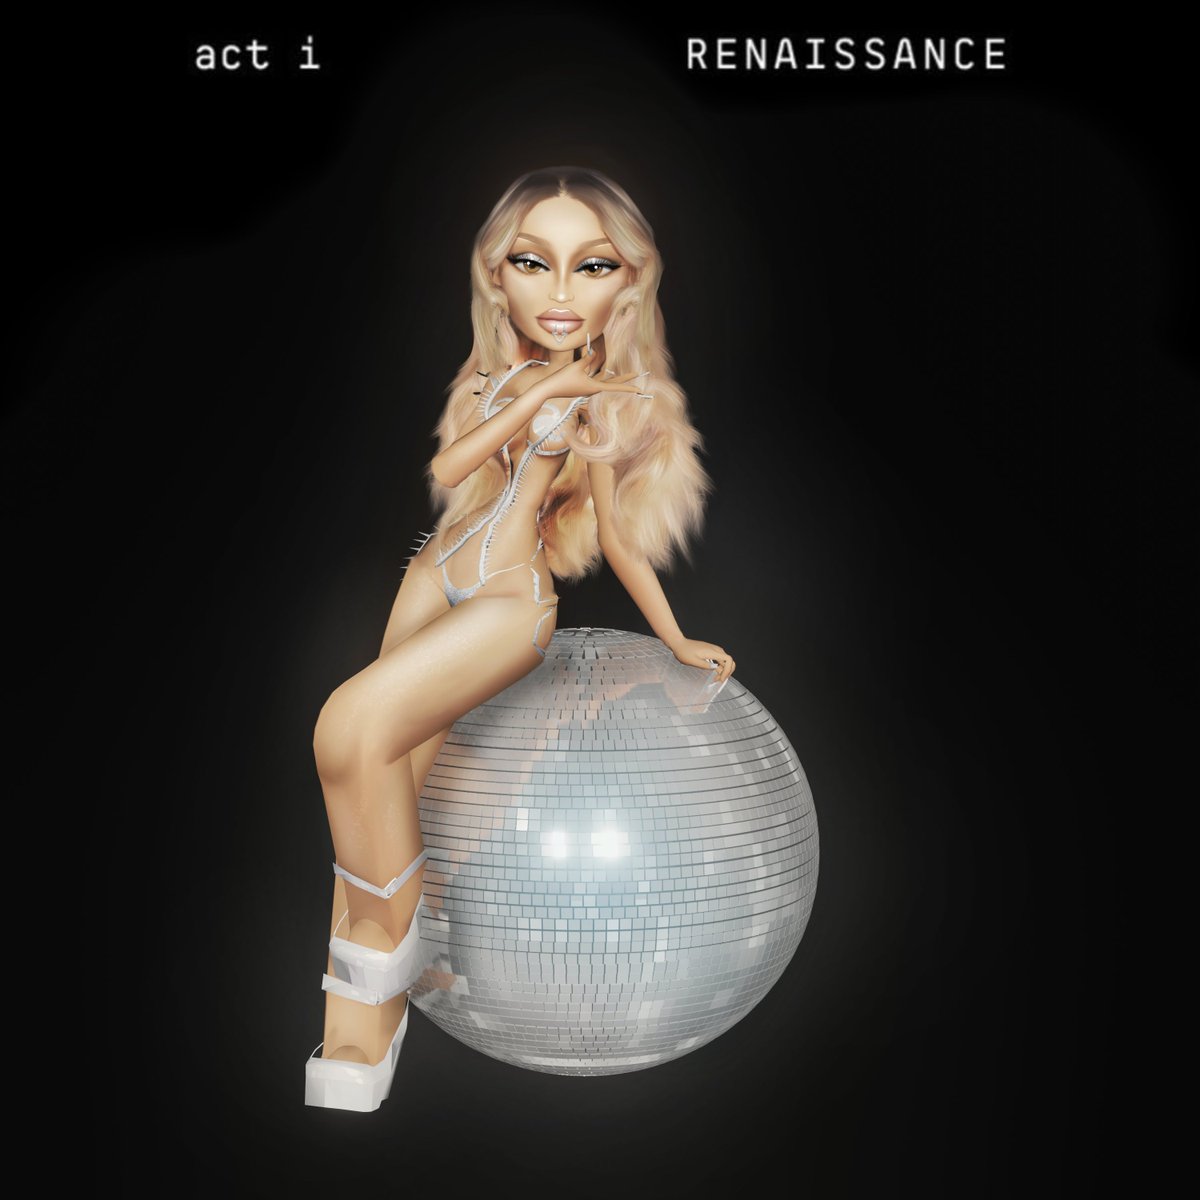 Act i - RENAISSANCE Pre Order Now #Beyoncé #RENAISSANCE